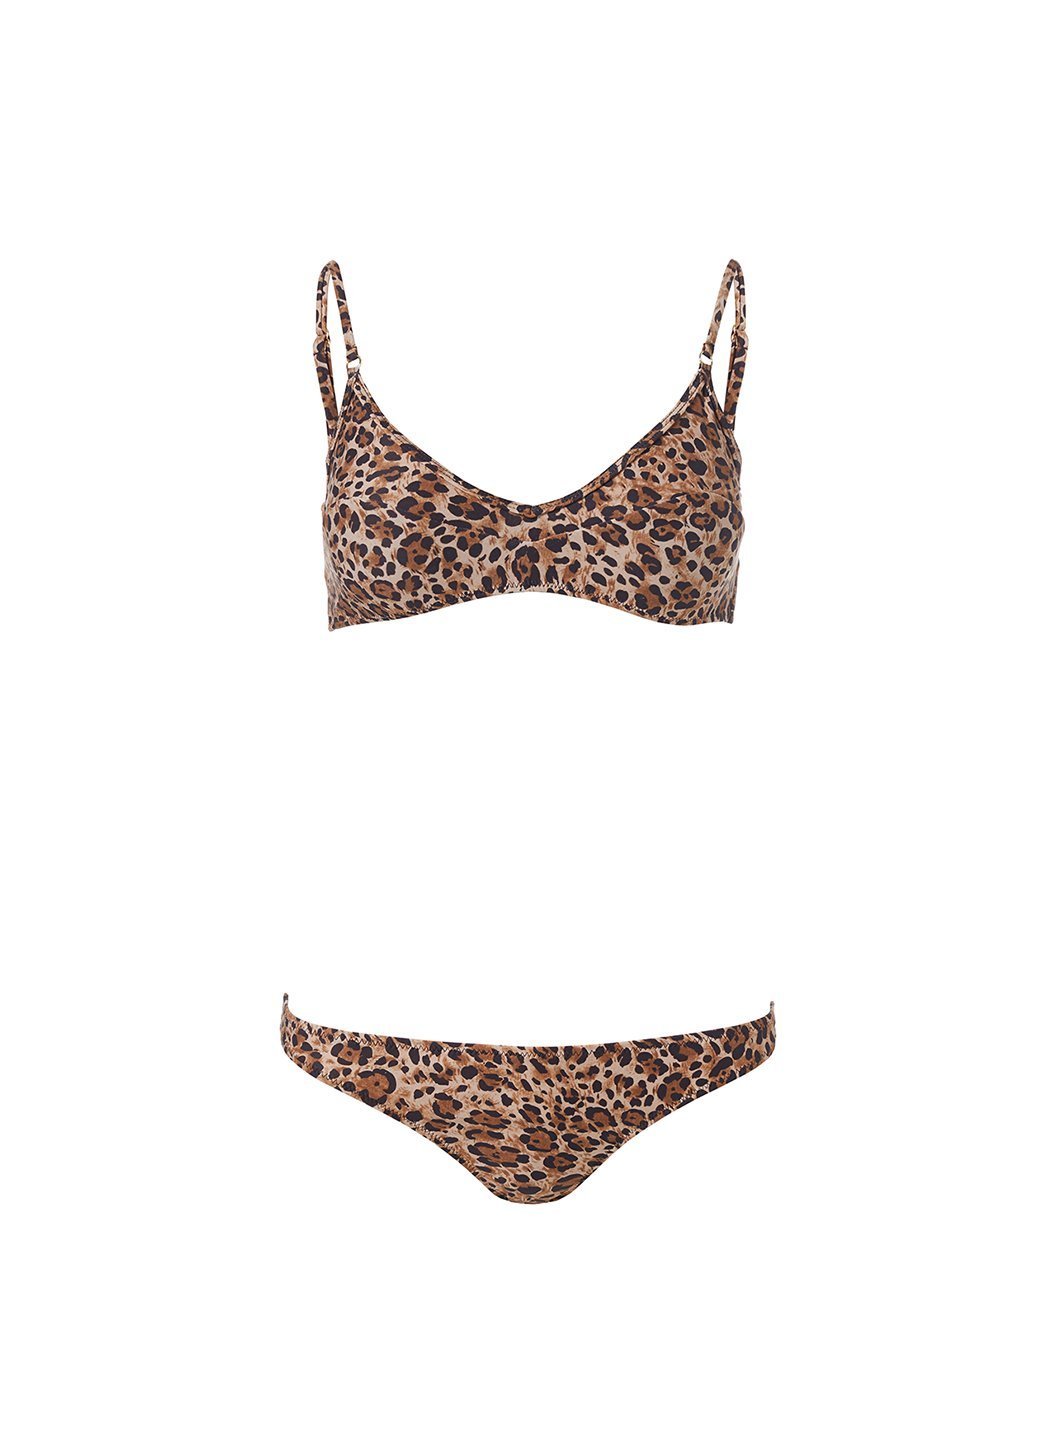 mykonos cheetah print bralette bikini Cutout